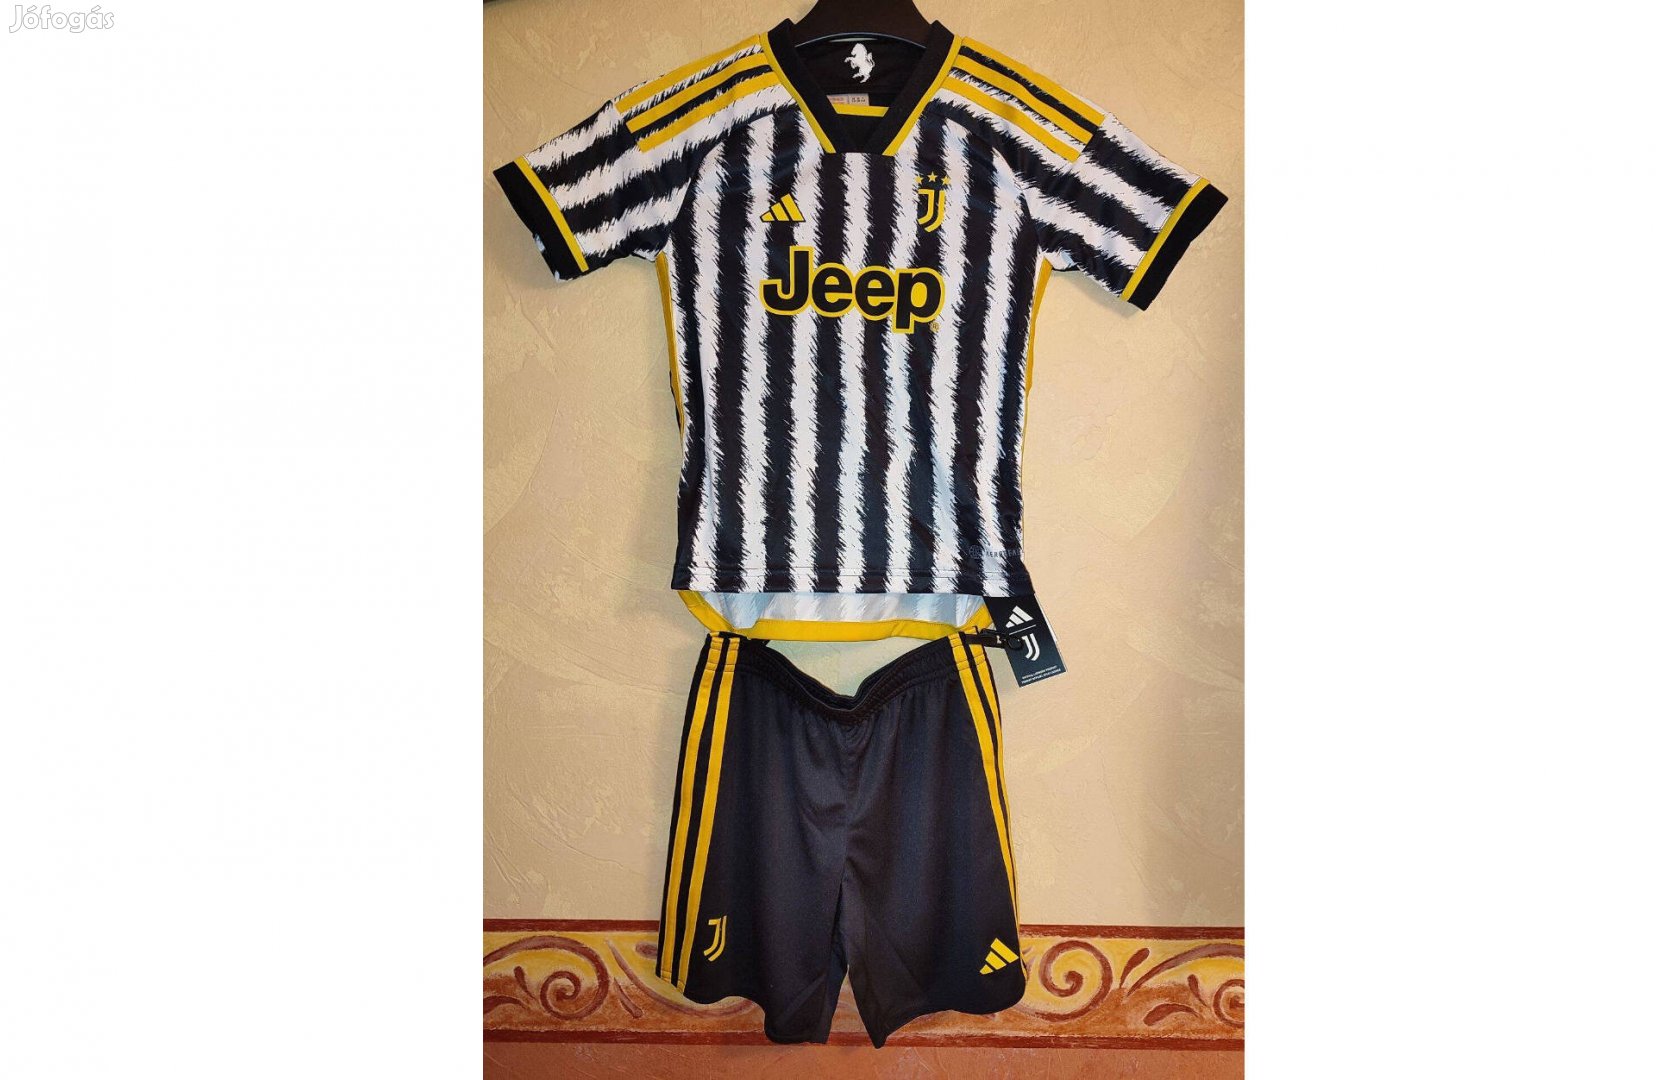 Juventus eredeti adidas fekete fehér gyerek szett (116)